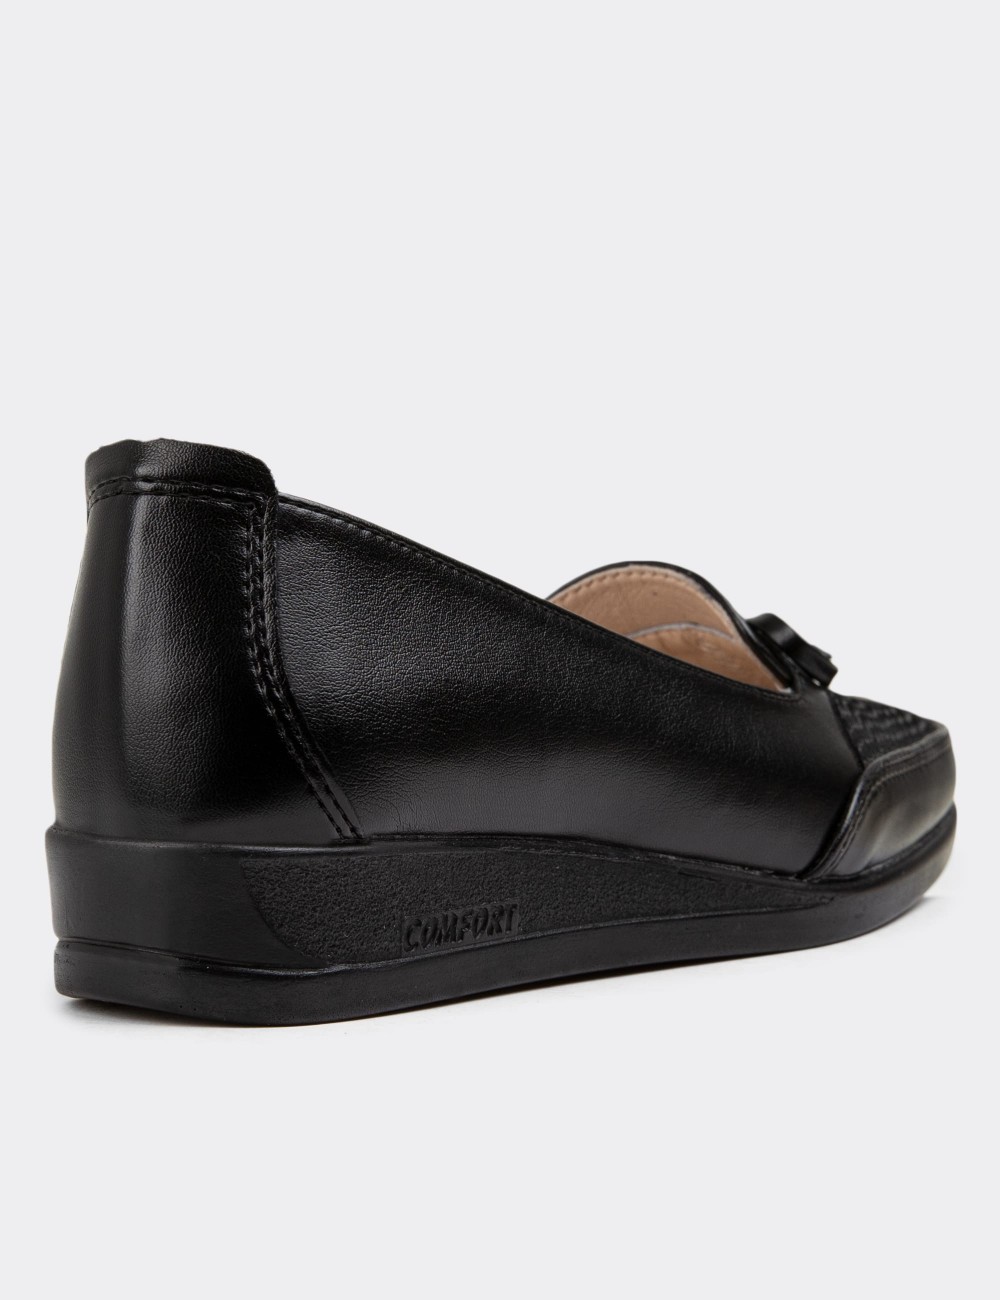 Black Loafers - K0148ZSYHC01